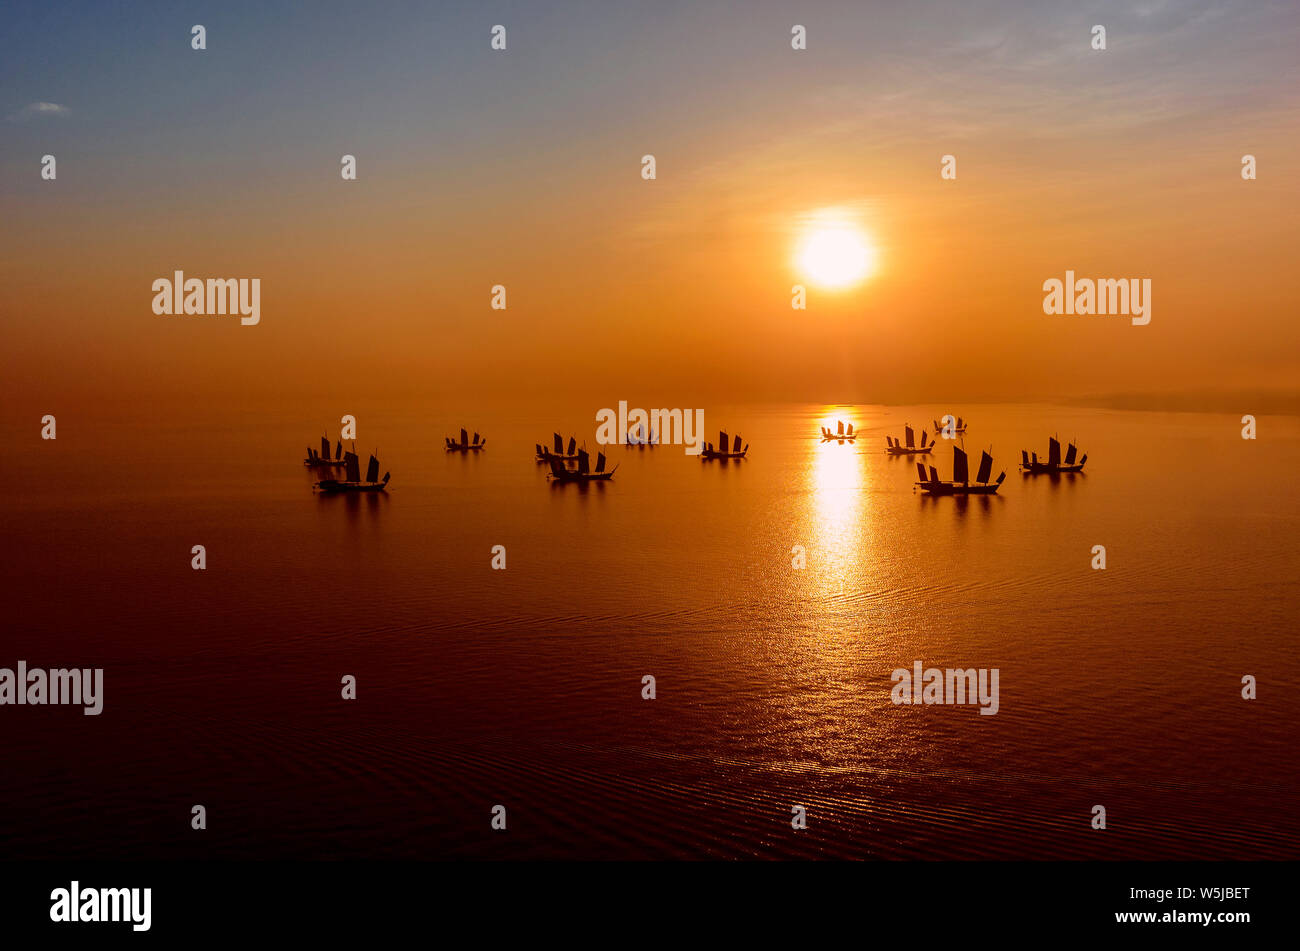 Fishing junks at sunrise on Lake Tai, Huzhou, China Stock Photo